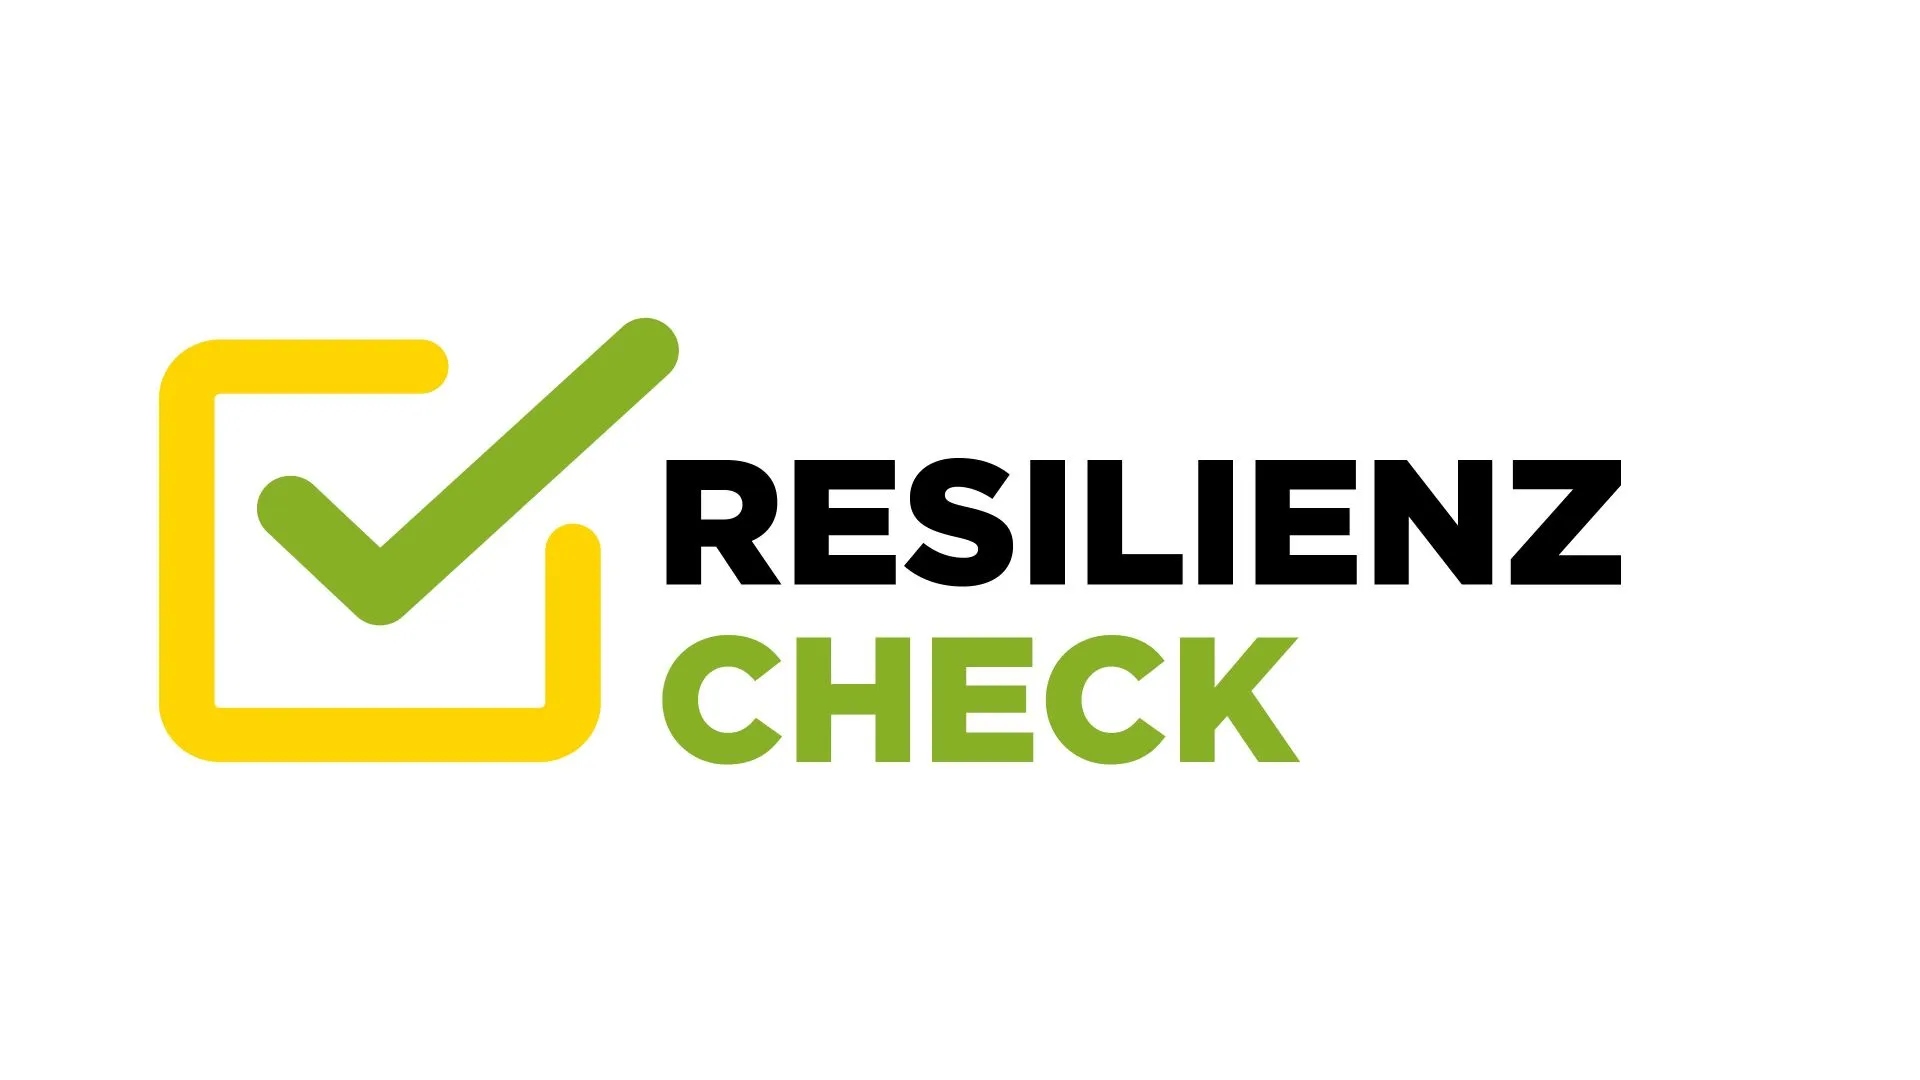 Der Resilienz-Check von der Chambre des Métiers – Ein Selbstcheck für Betriebe zur Steigerung der Krisenfestigkeit 